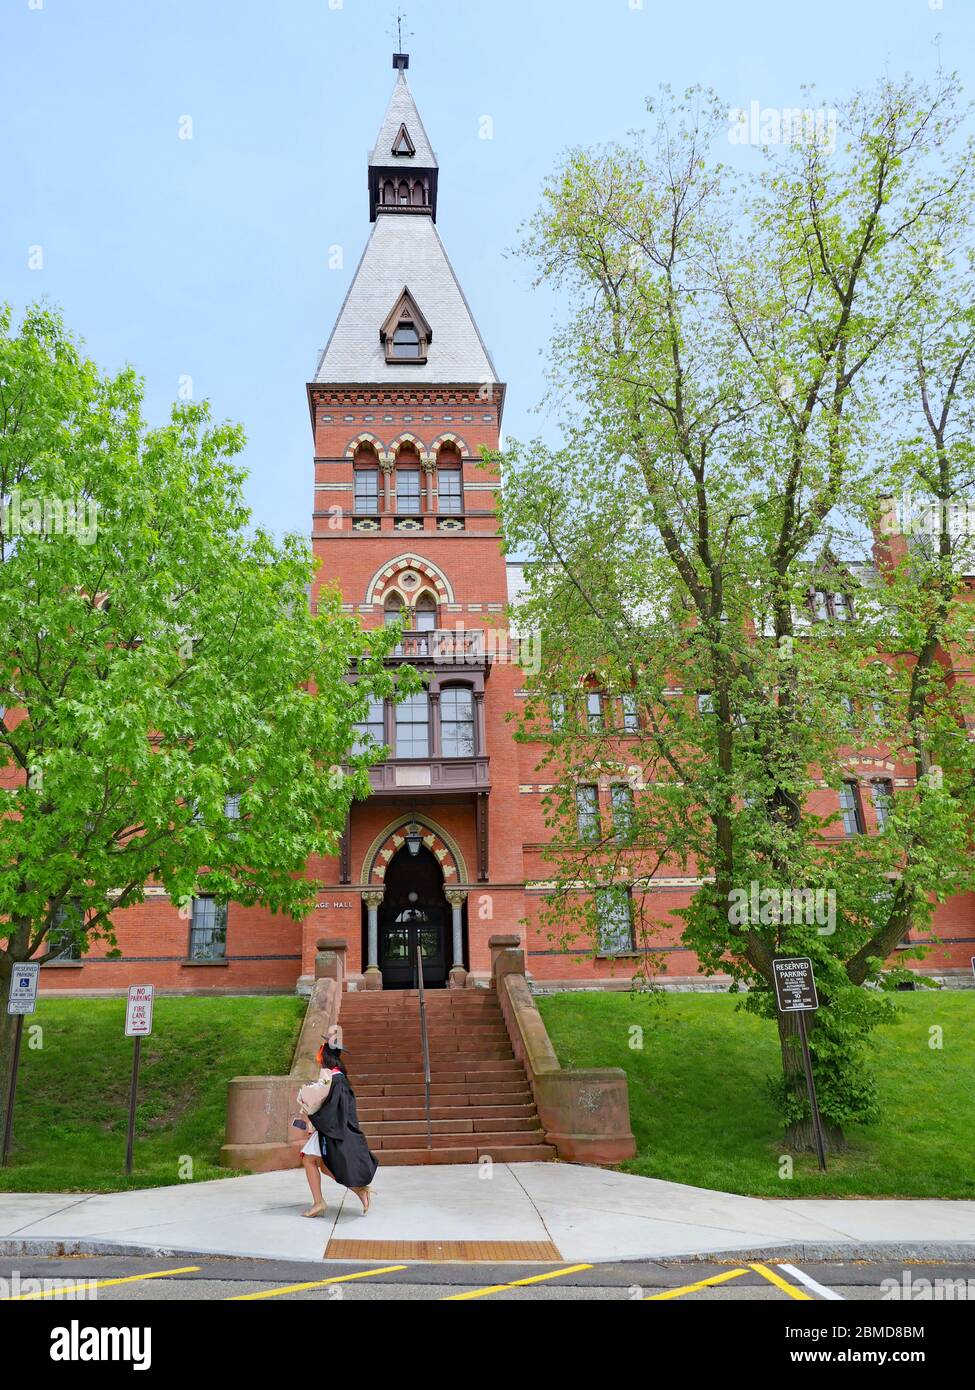 ITHACA, NY - 2019 MAGGIO: Una studentessa laureata che indossa un cappello e una passeggio passa davanti ad un edificio in stile romanico all'Università di Cornell. Foto Stock